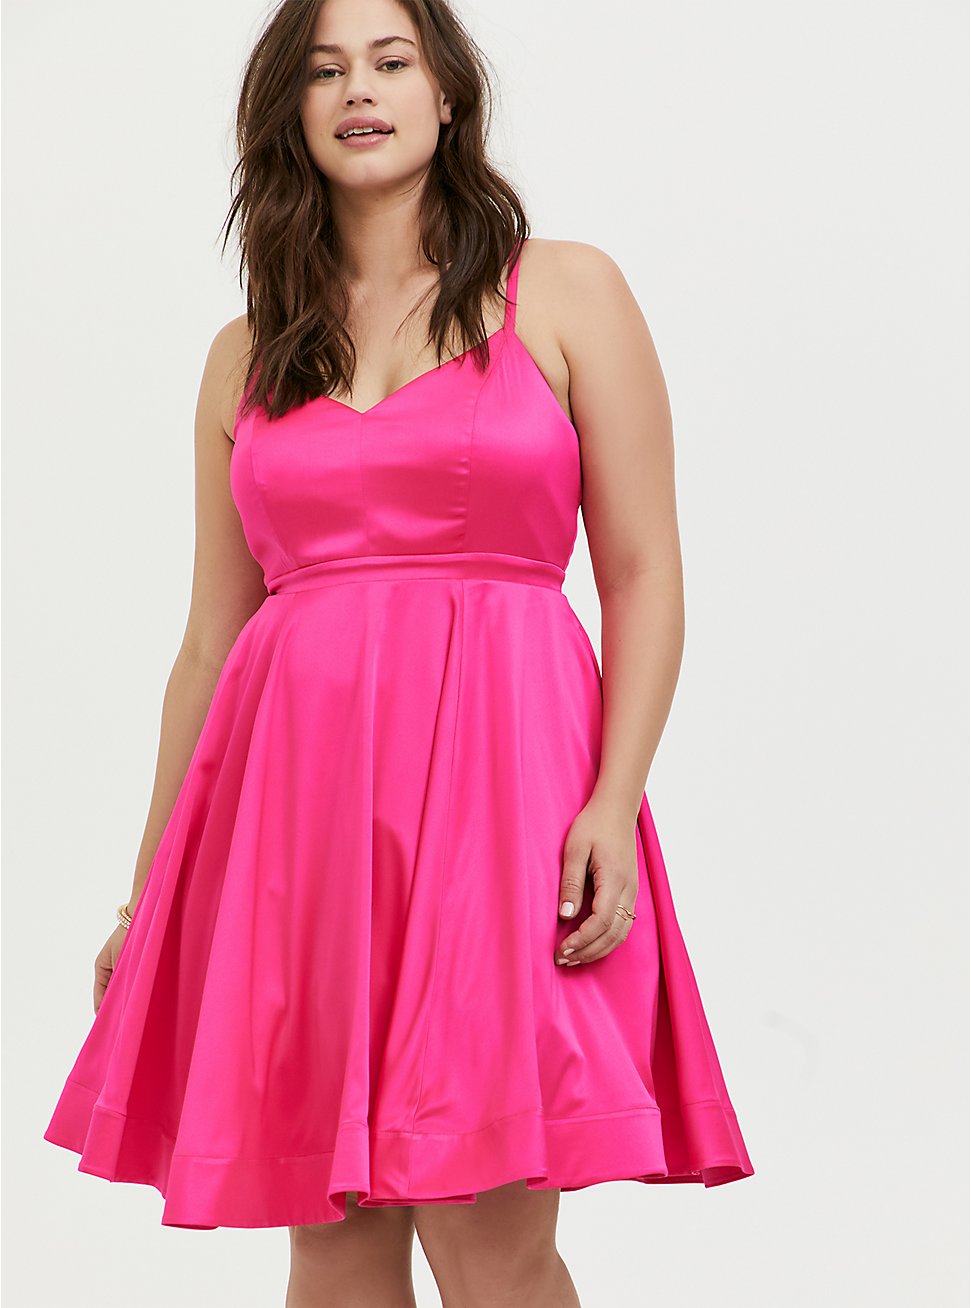 Hot Pink Satin Skater Dress - Torrid